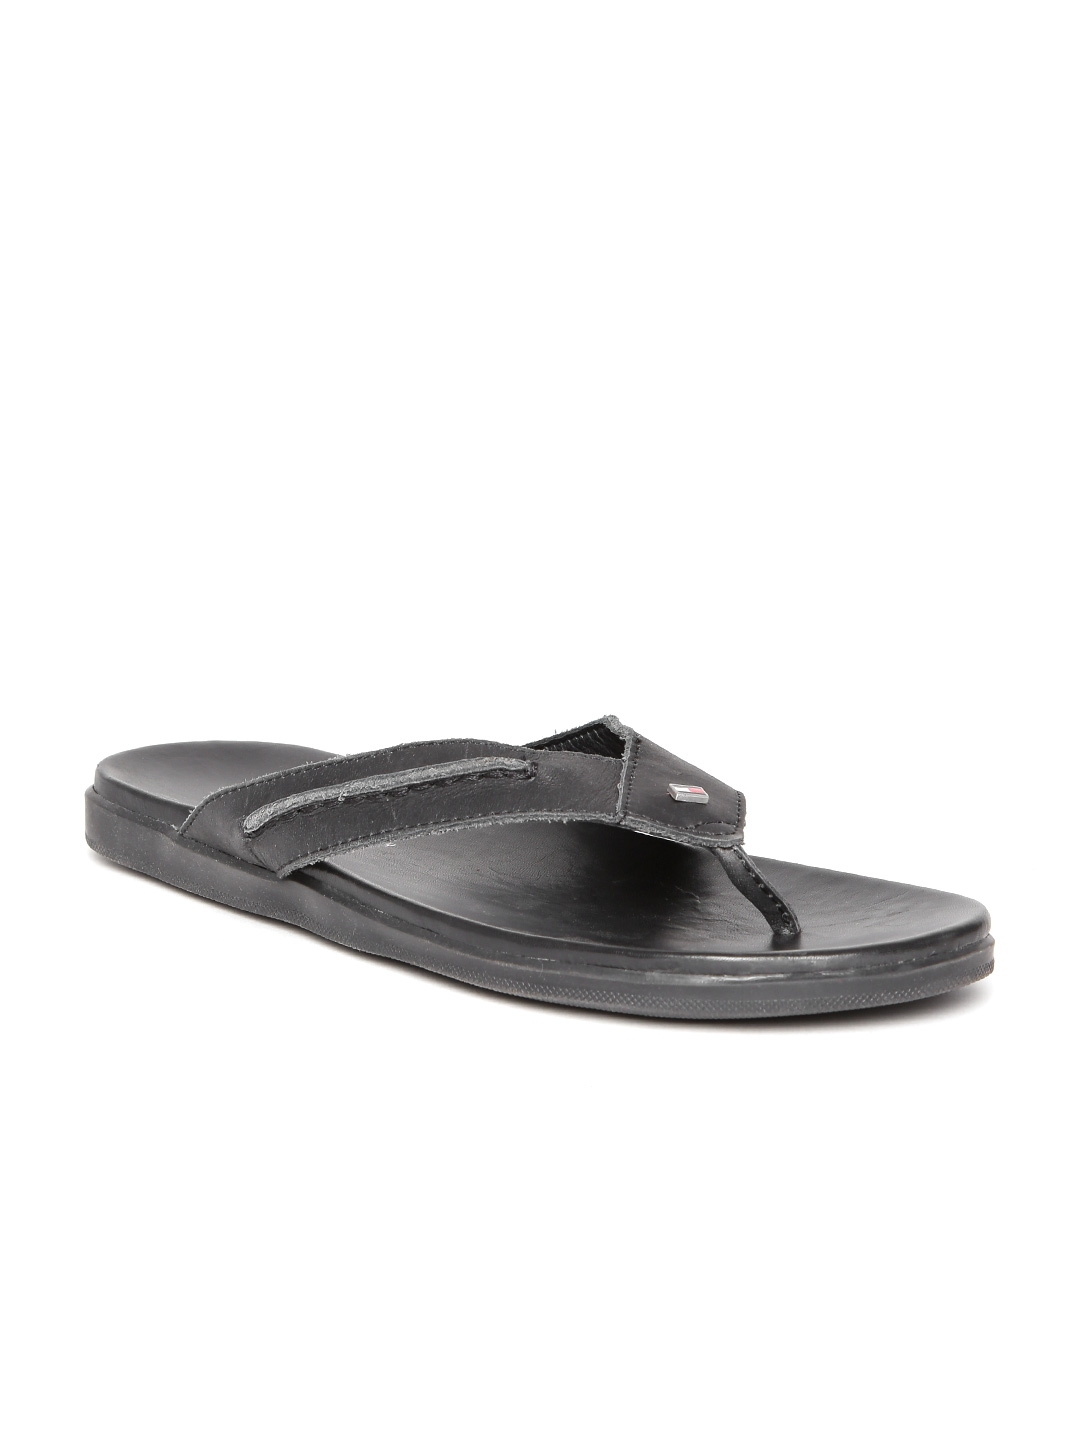 Buy Tommy Hilfiger Men Black Textured Leather Sandals - Sandals for Men ...